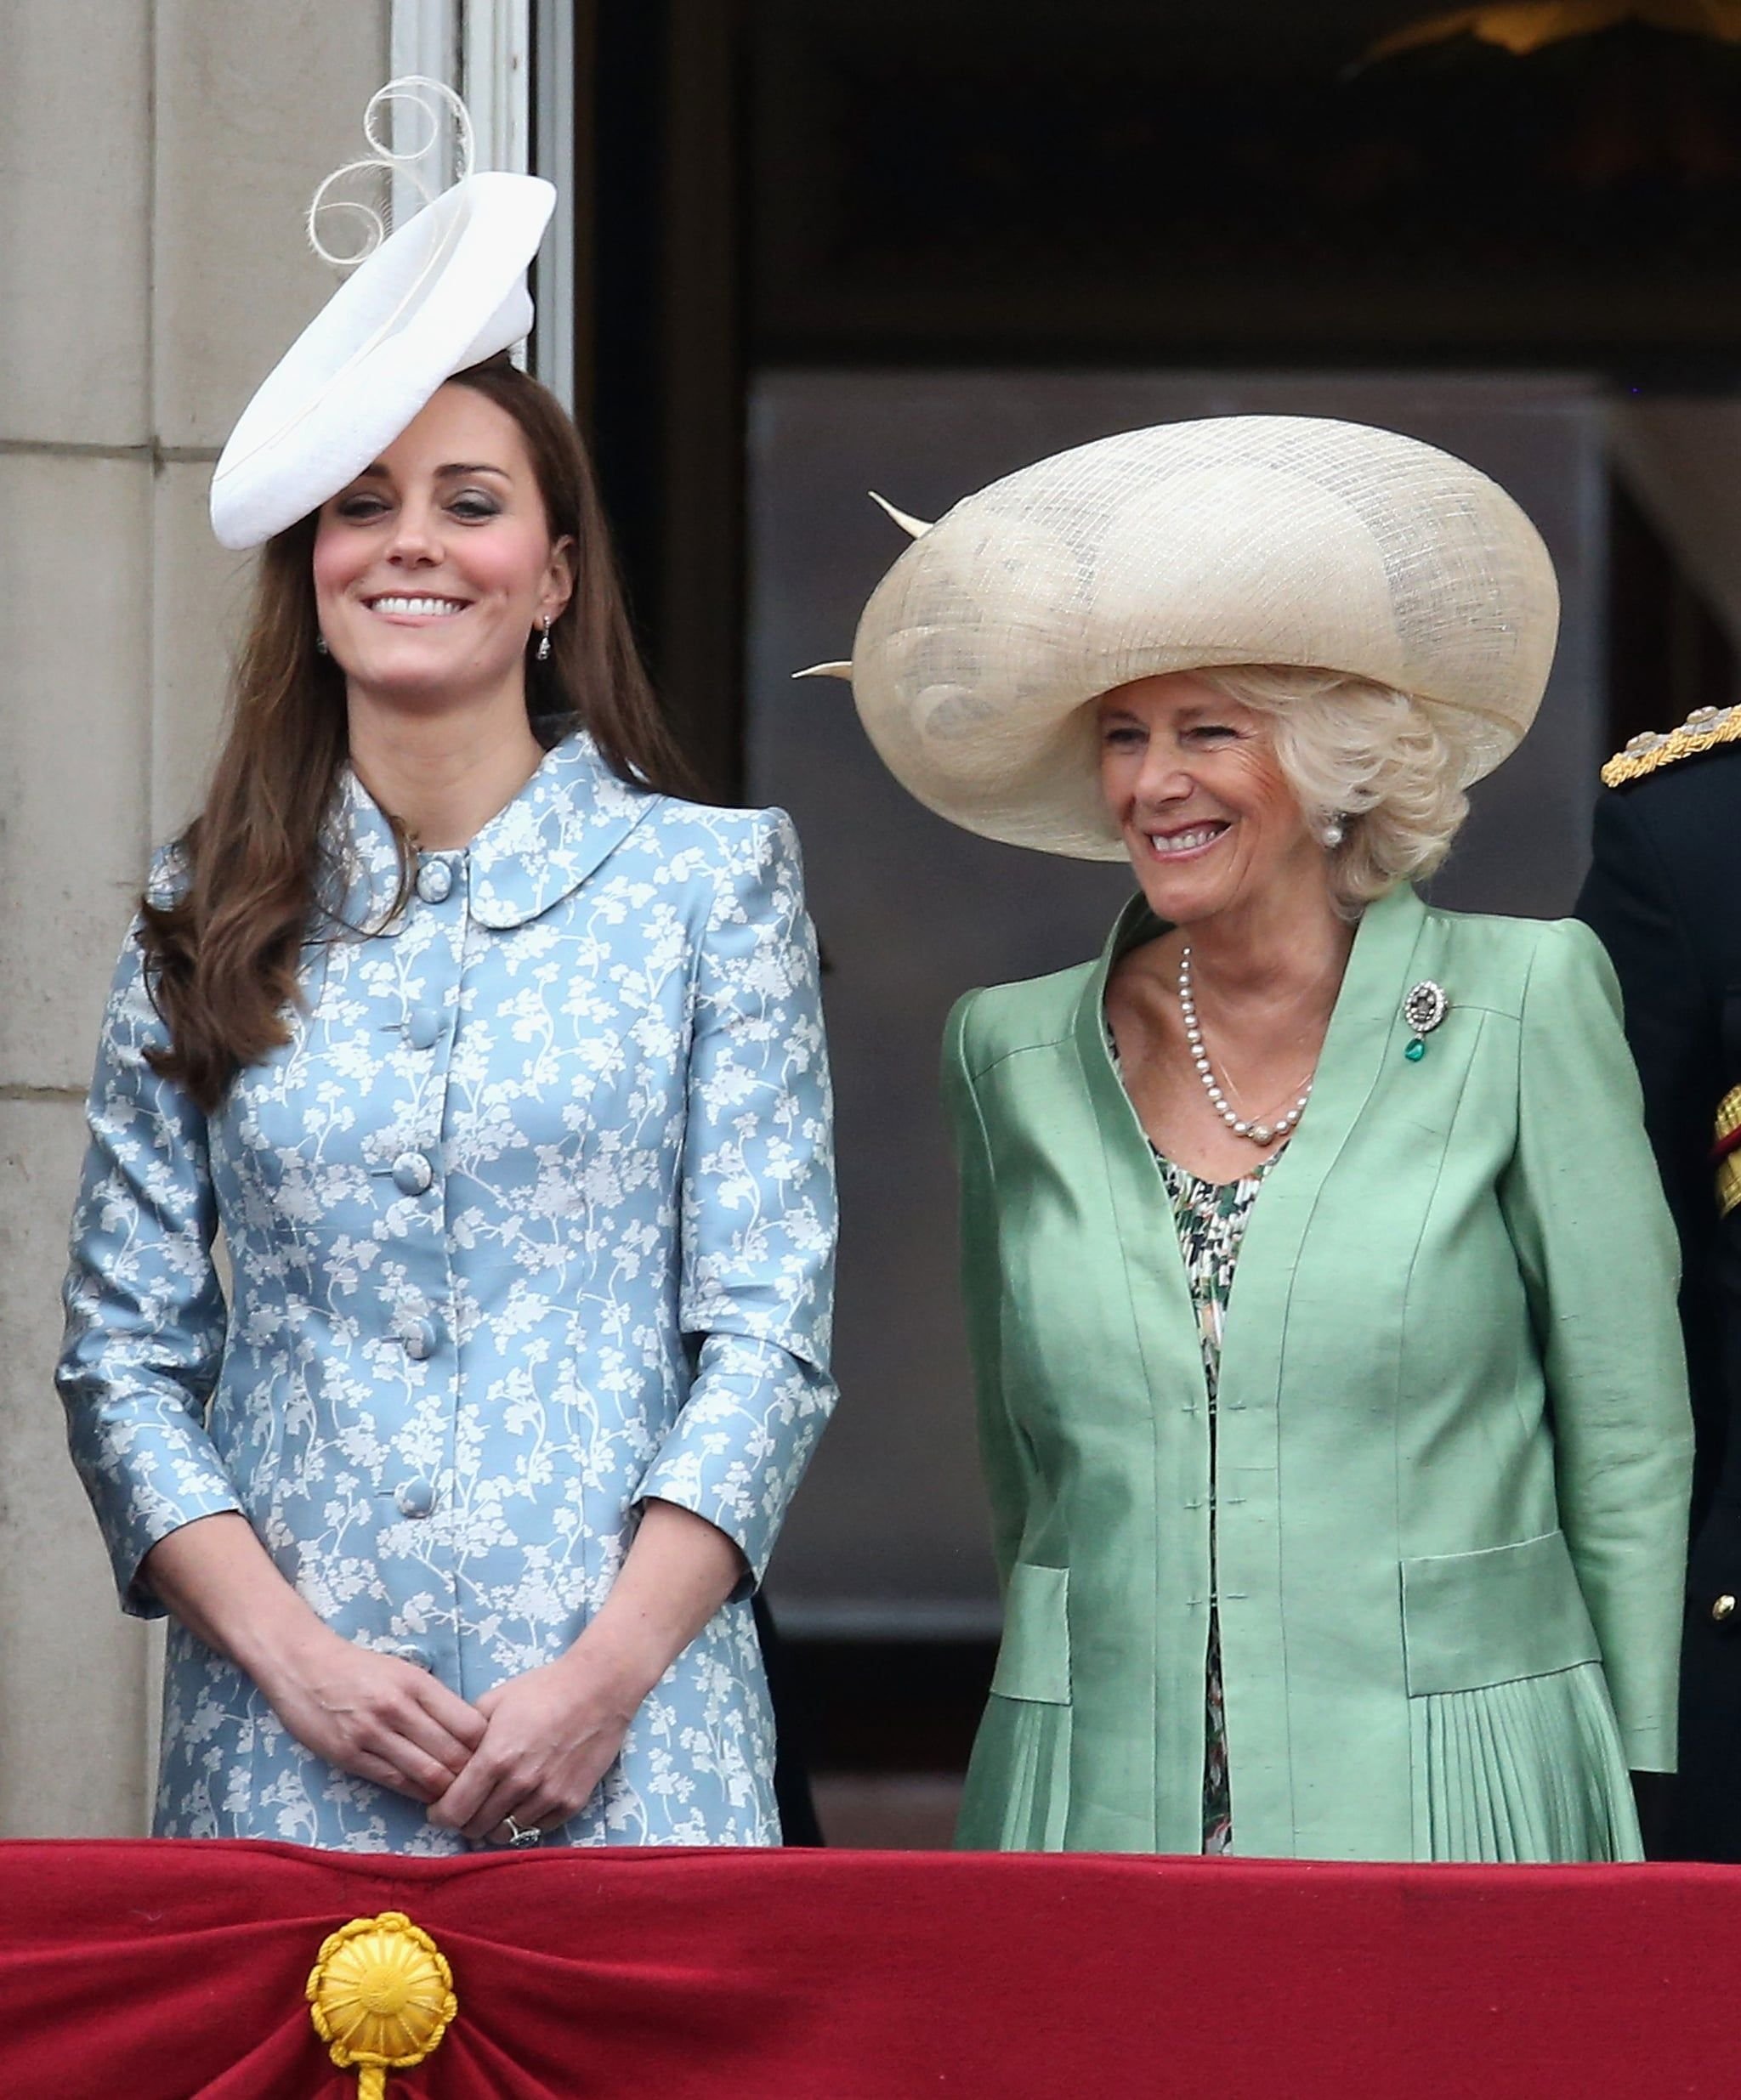 Принц Гарри и Меган Маркл не поздравили королеву с 70-летием правления